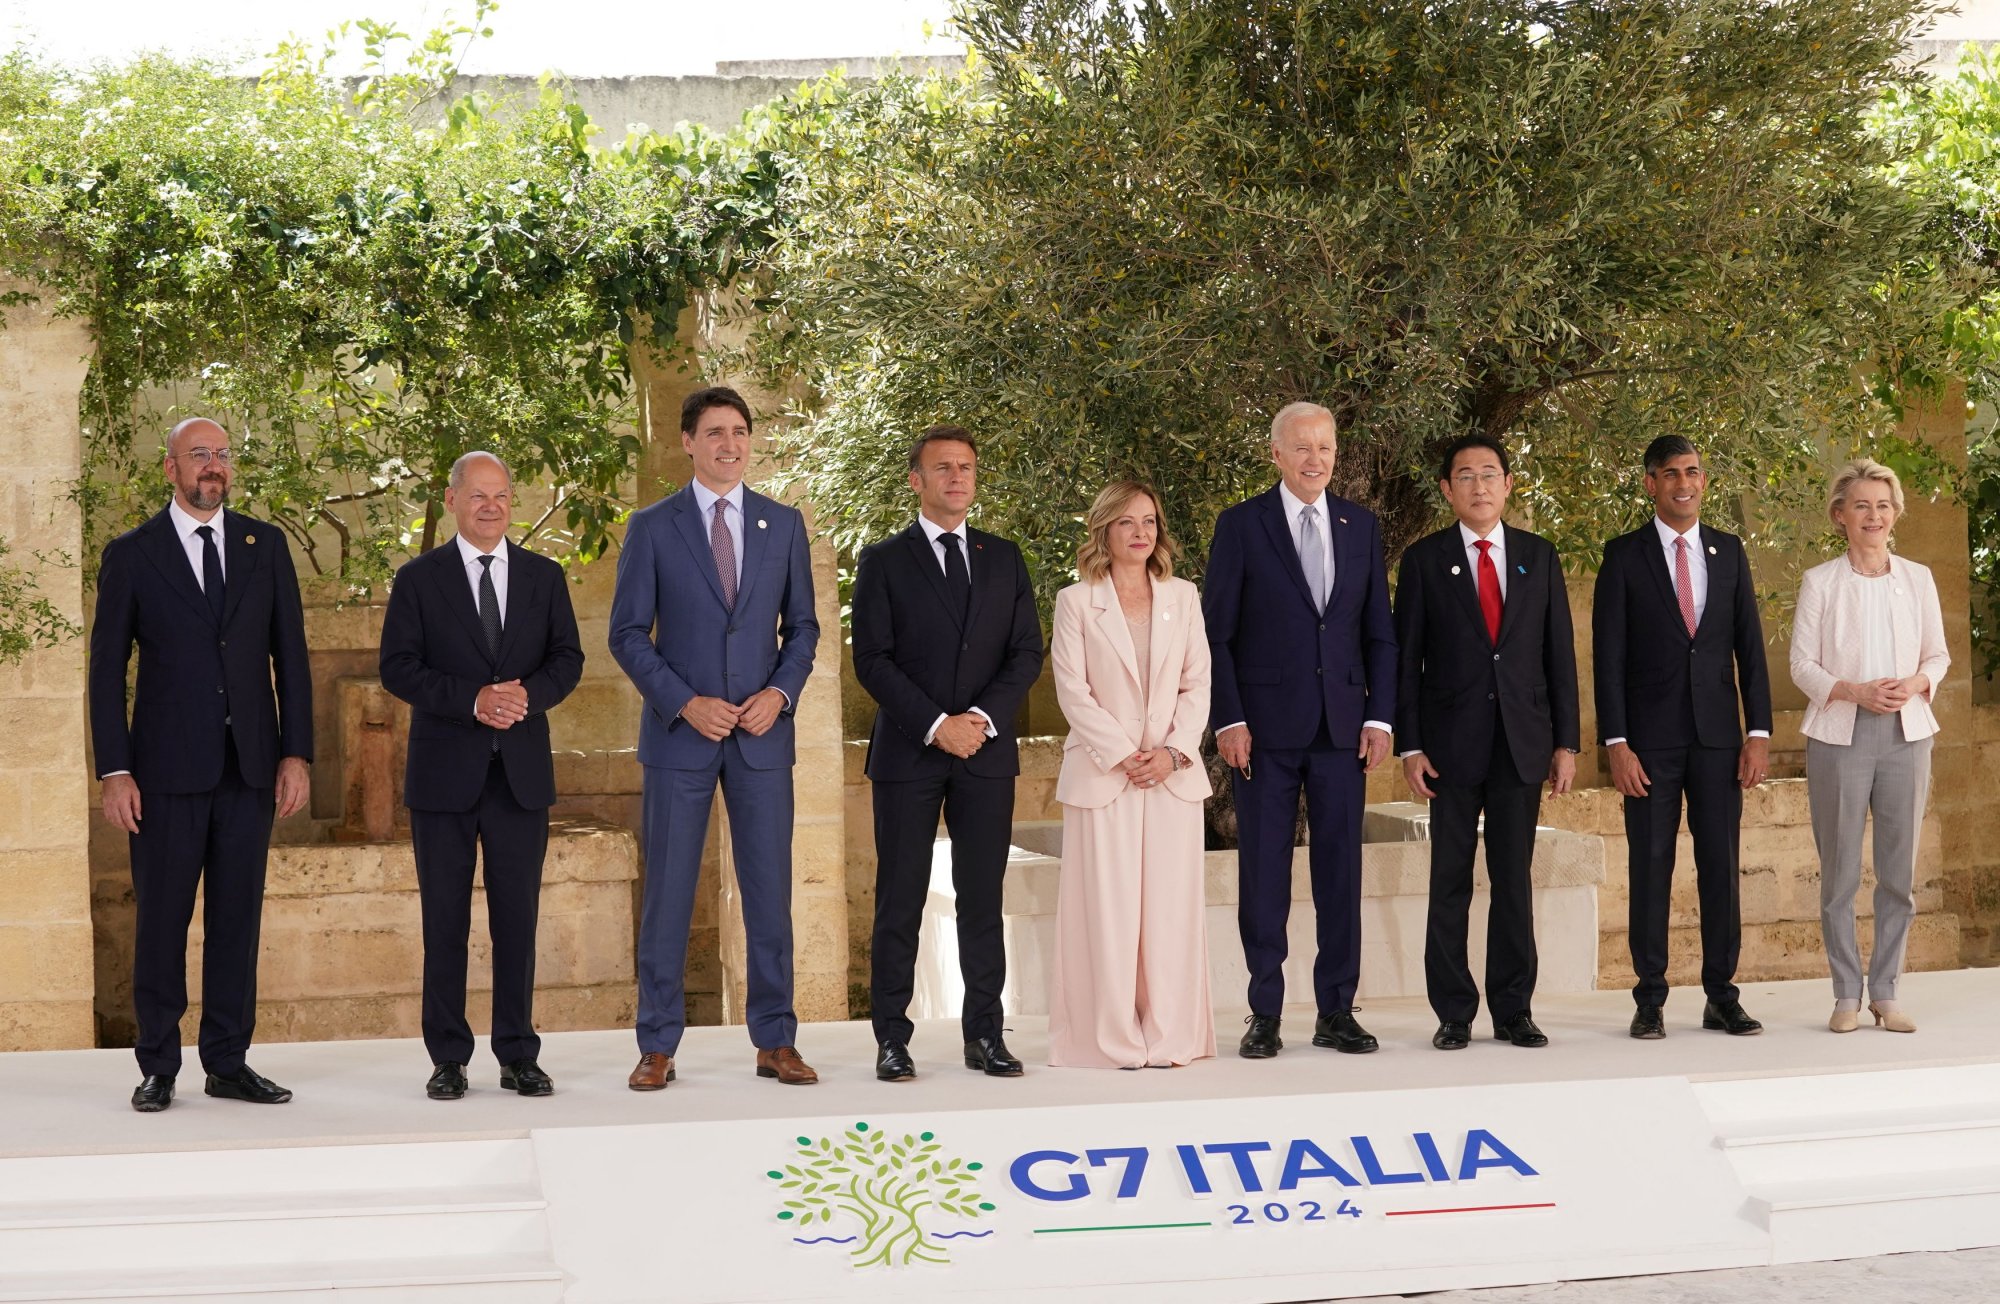 Σε εξέλιξη η σύνοδος κορυφής των G7 στην Ιταλία - Στην ατζέντα η παροχή στήριξης στην Ουκρανία